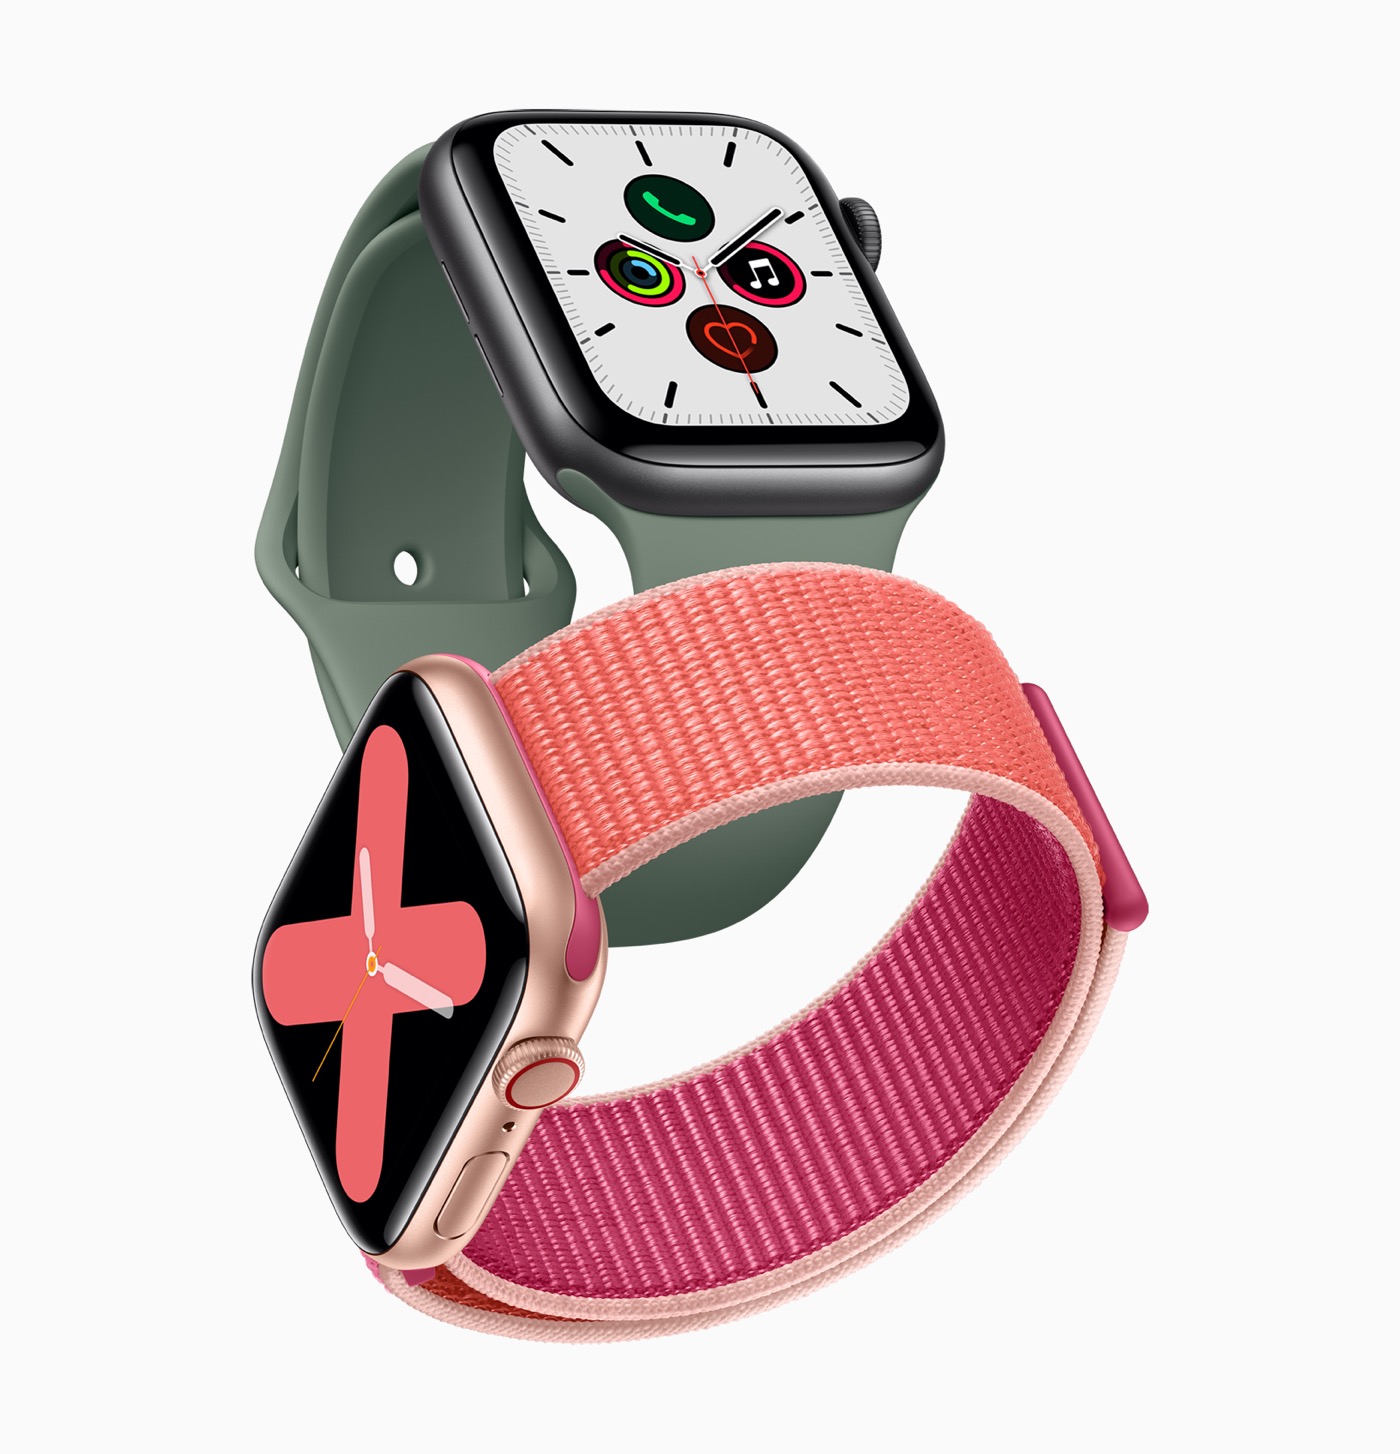 ｢Apple Watch Series 6｣は今月は発表されない??